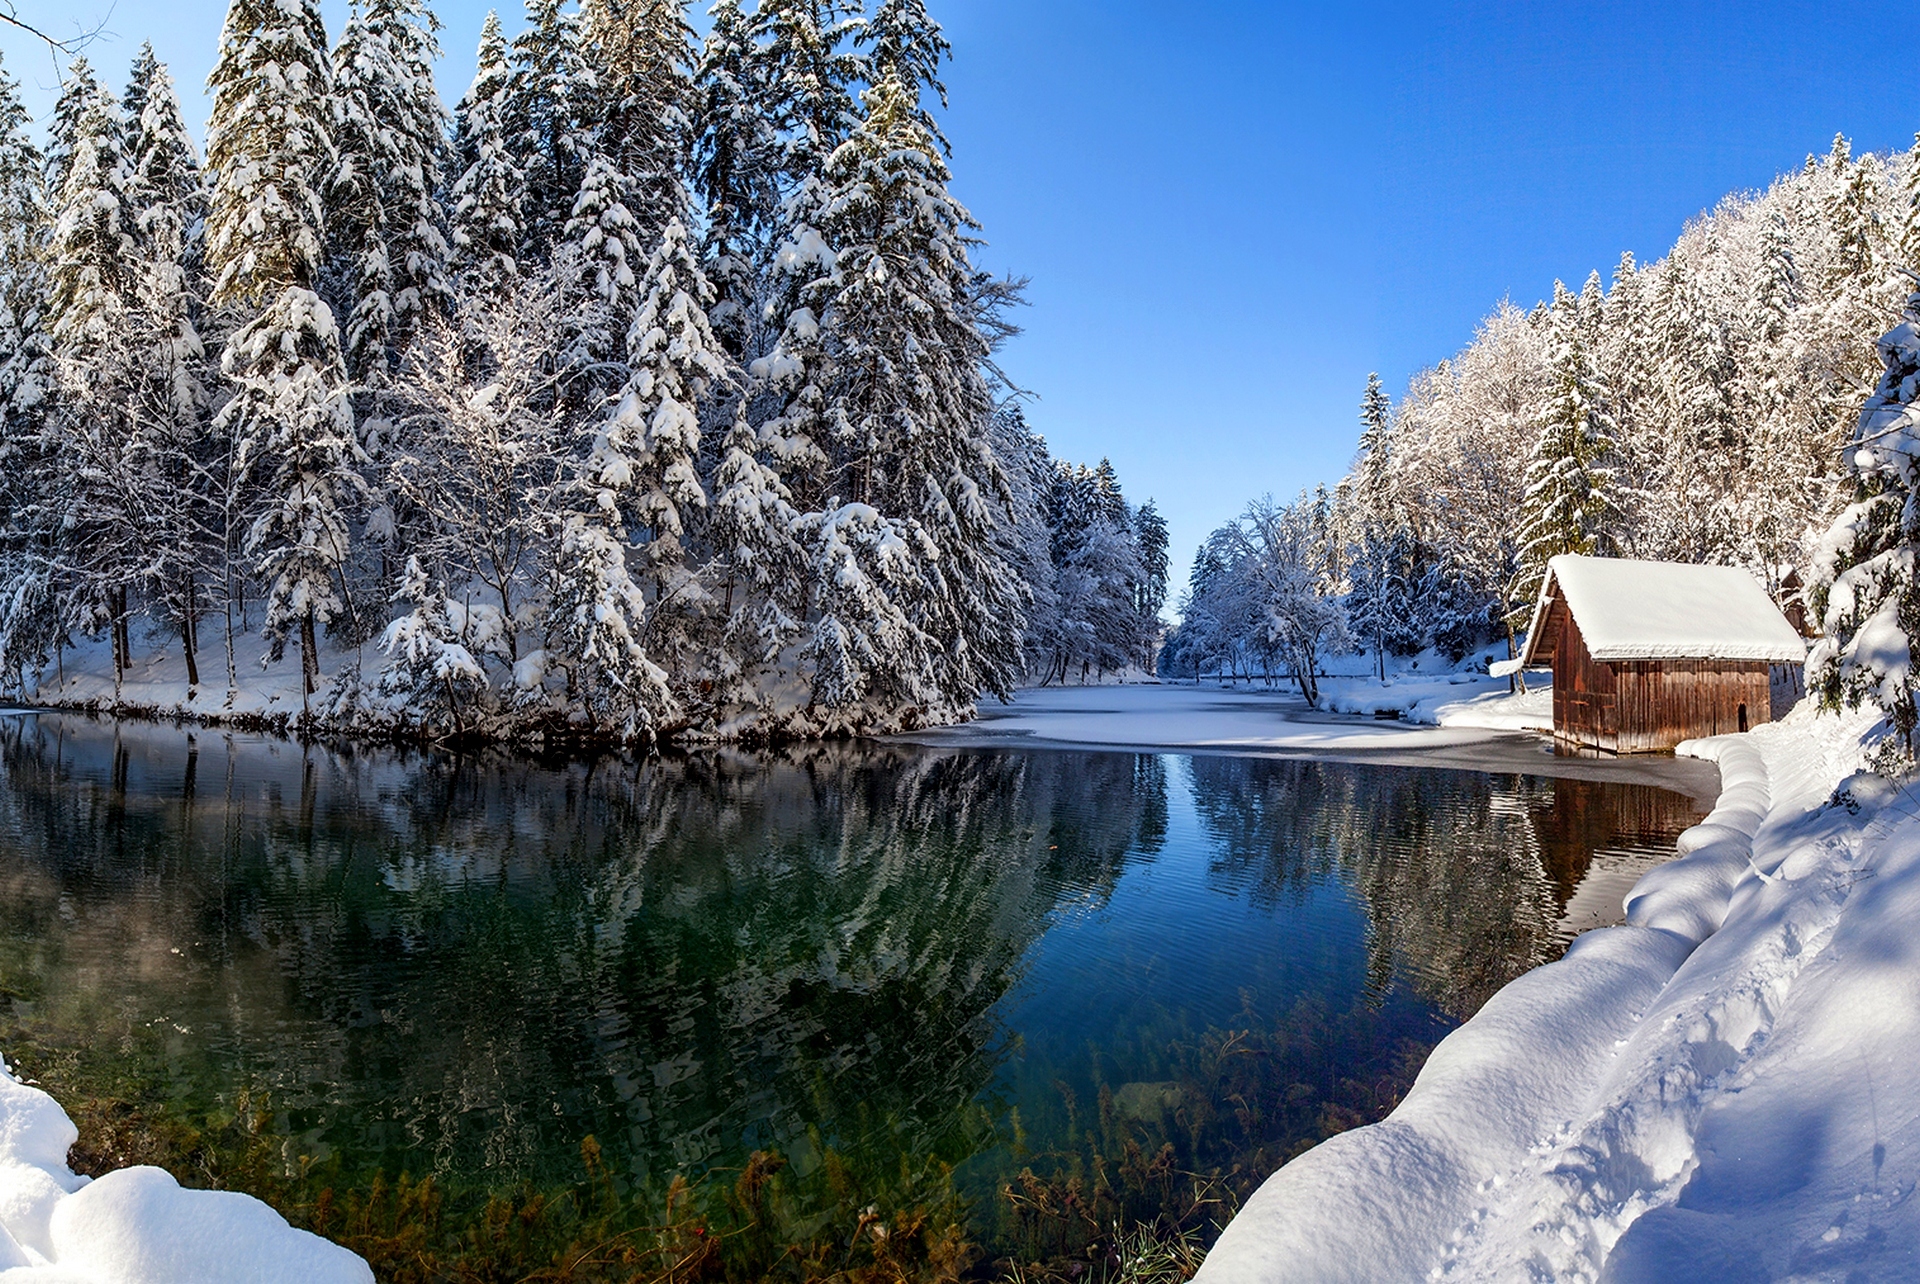 Скачать обои бесплатно Зима, Снег, Озеро, Лес, Дерево, Кабина, Сделано Человеком картинка на рабочий стол ПК